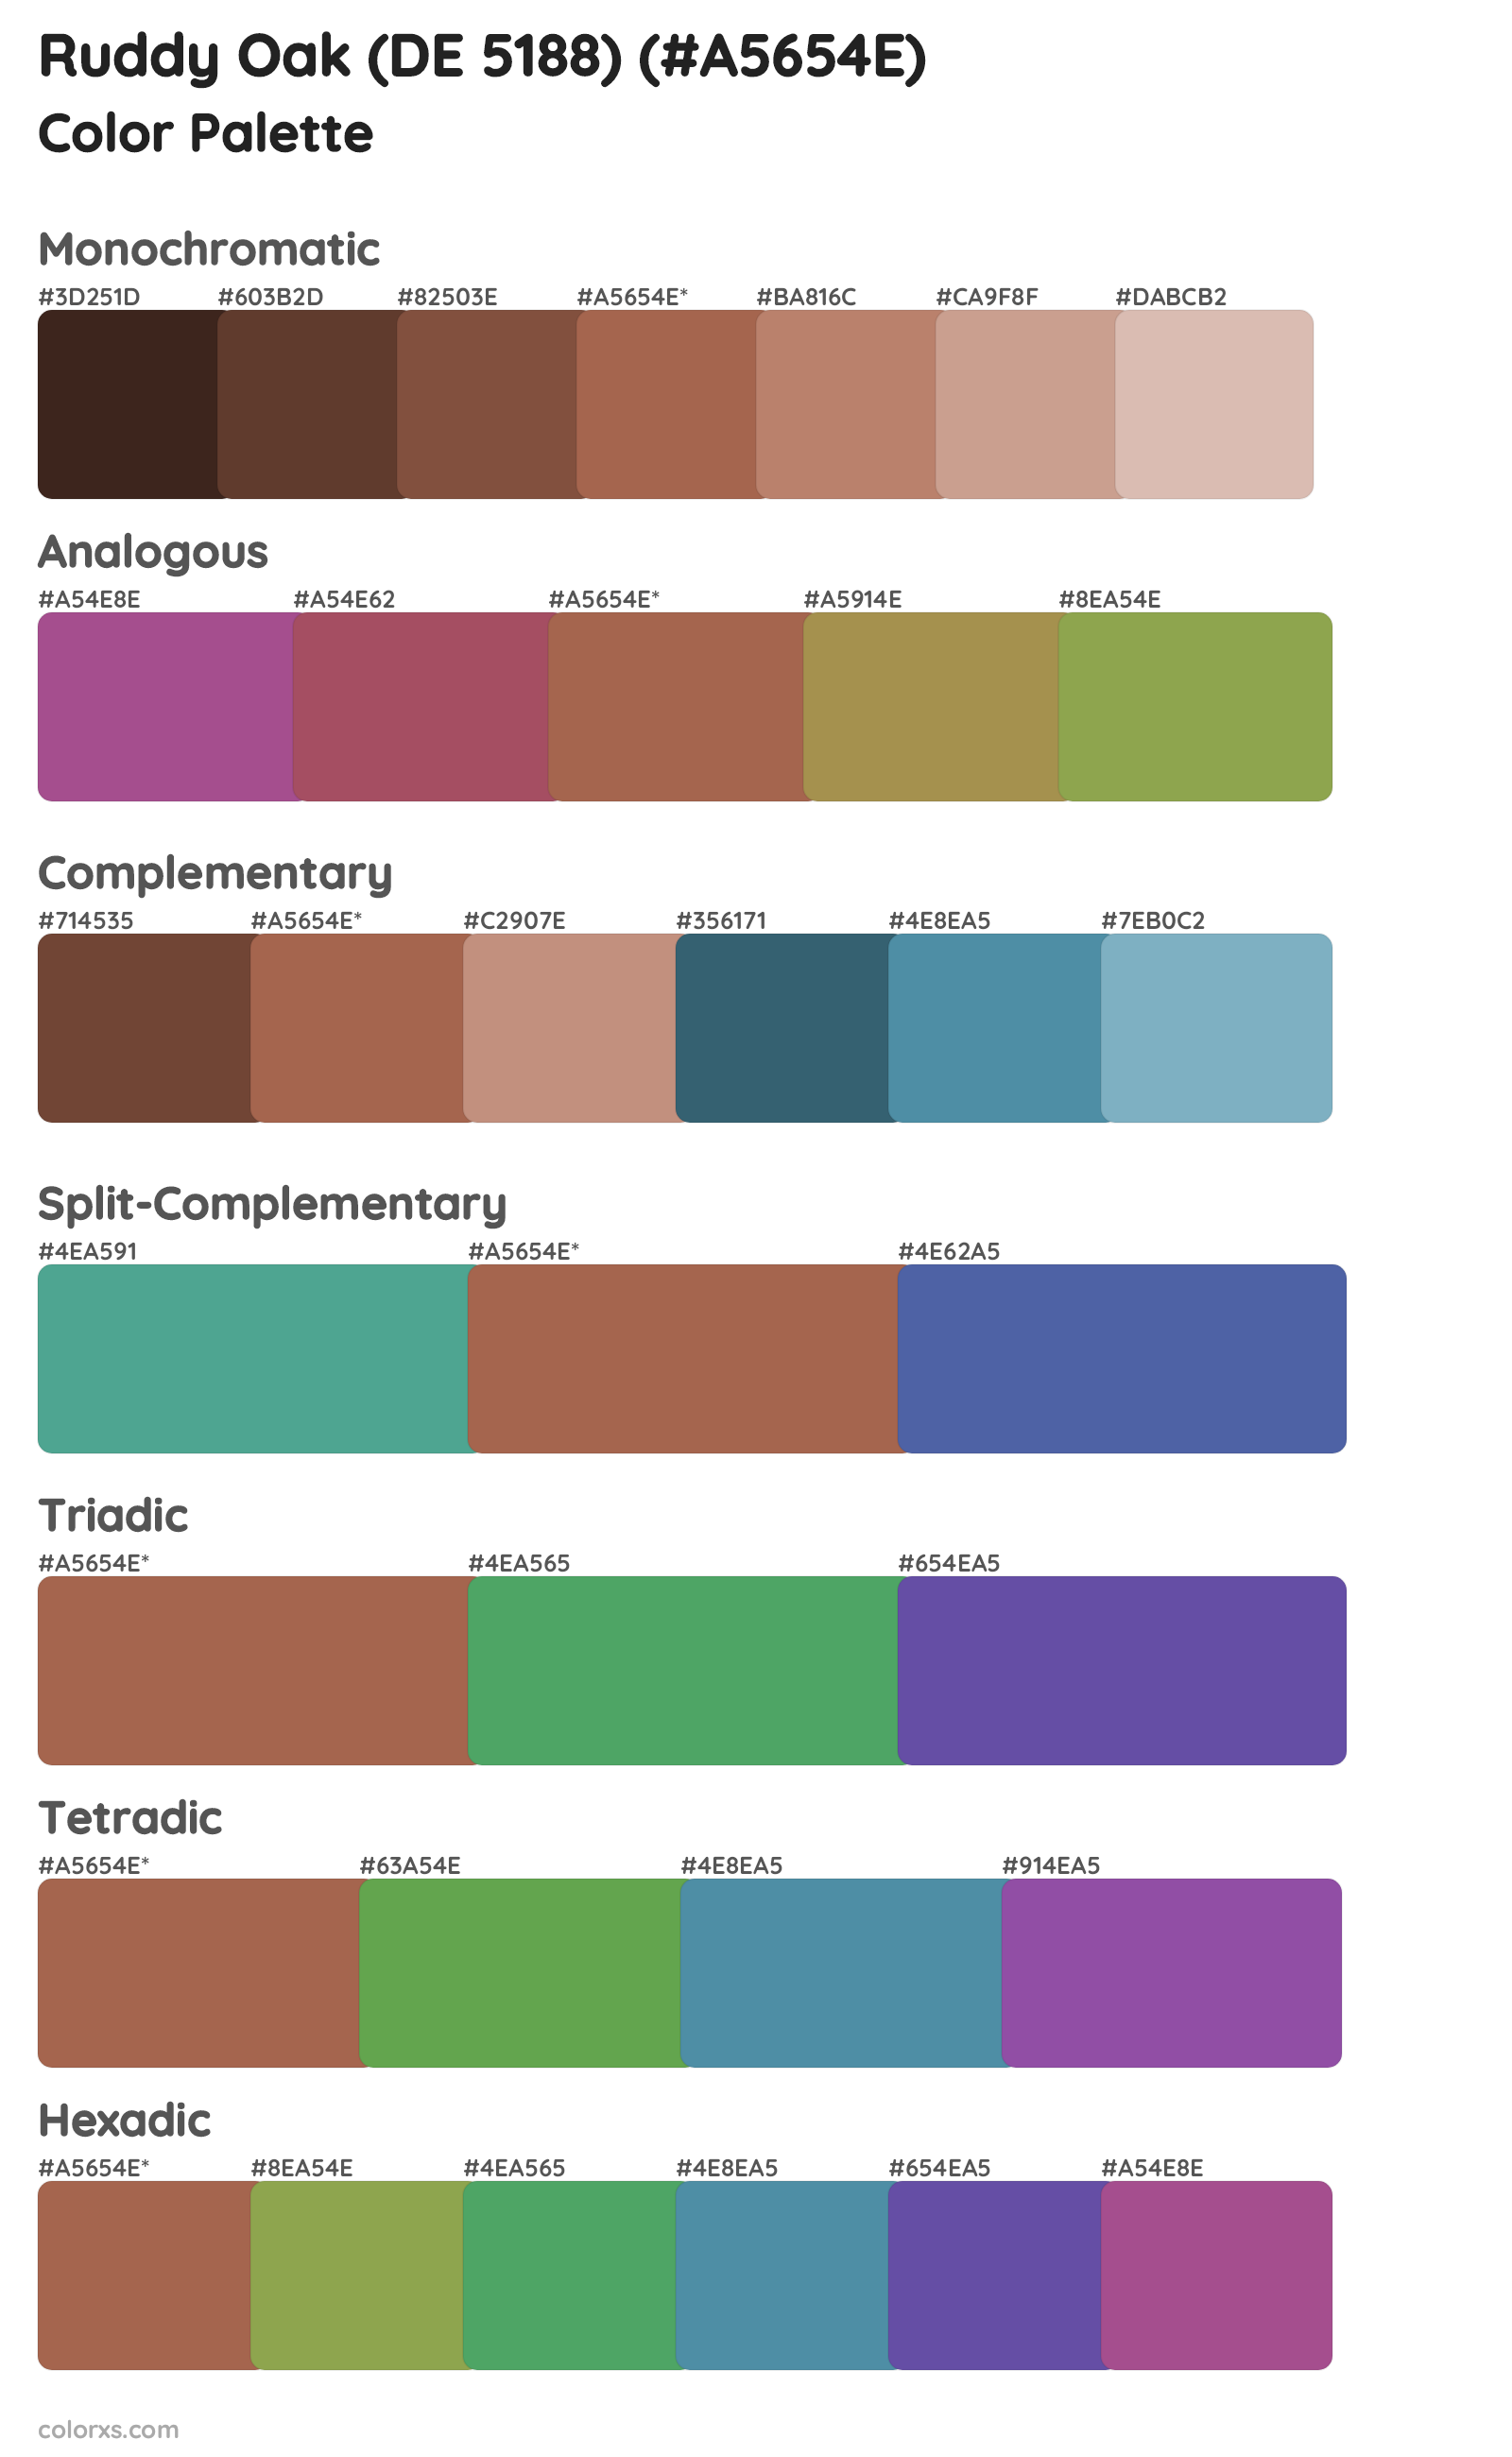 Ruddy Oak (DE 5188) Color Scheme Palettes